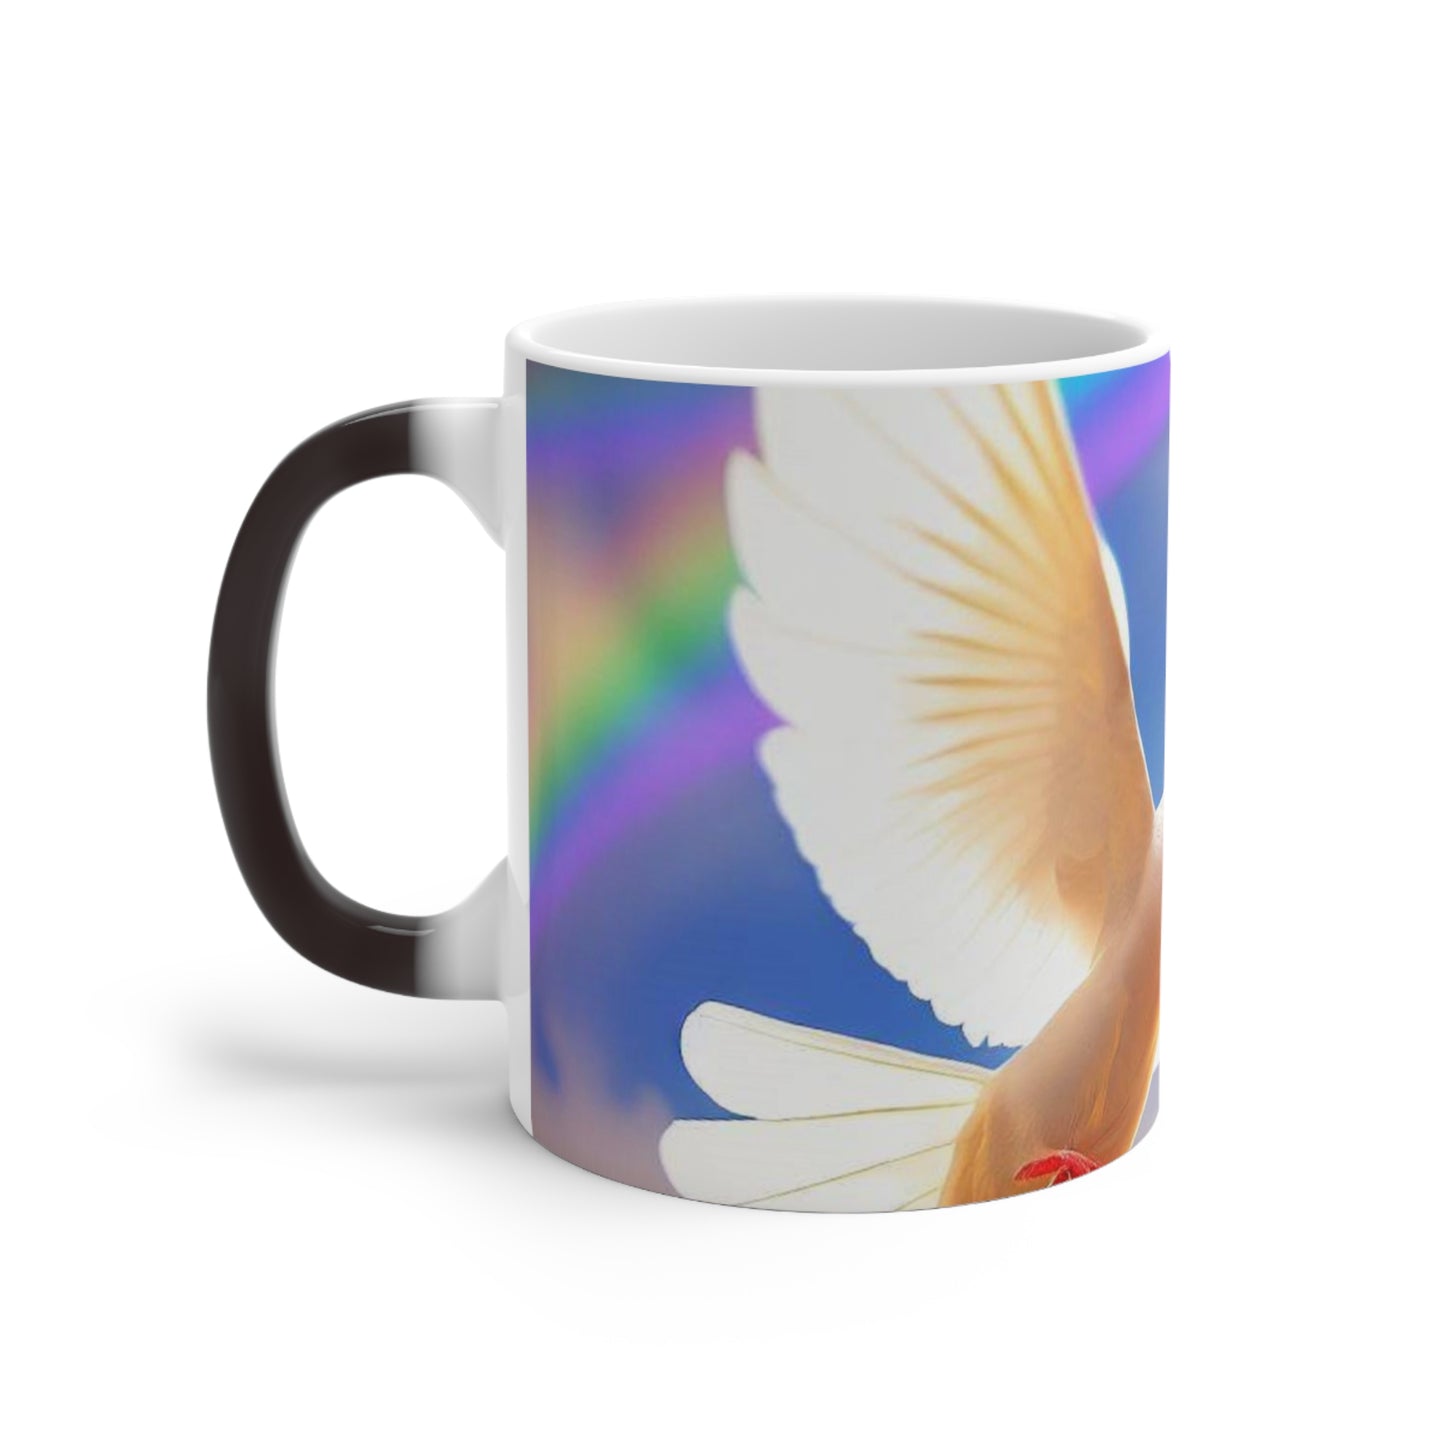 Color Changing Mug, Rainbow Coffee Mug, Christian Coffee Mug, Christian Gift